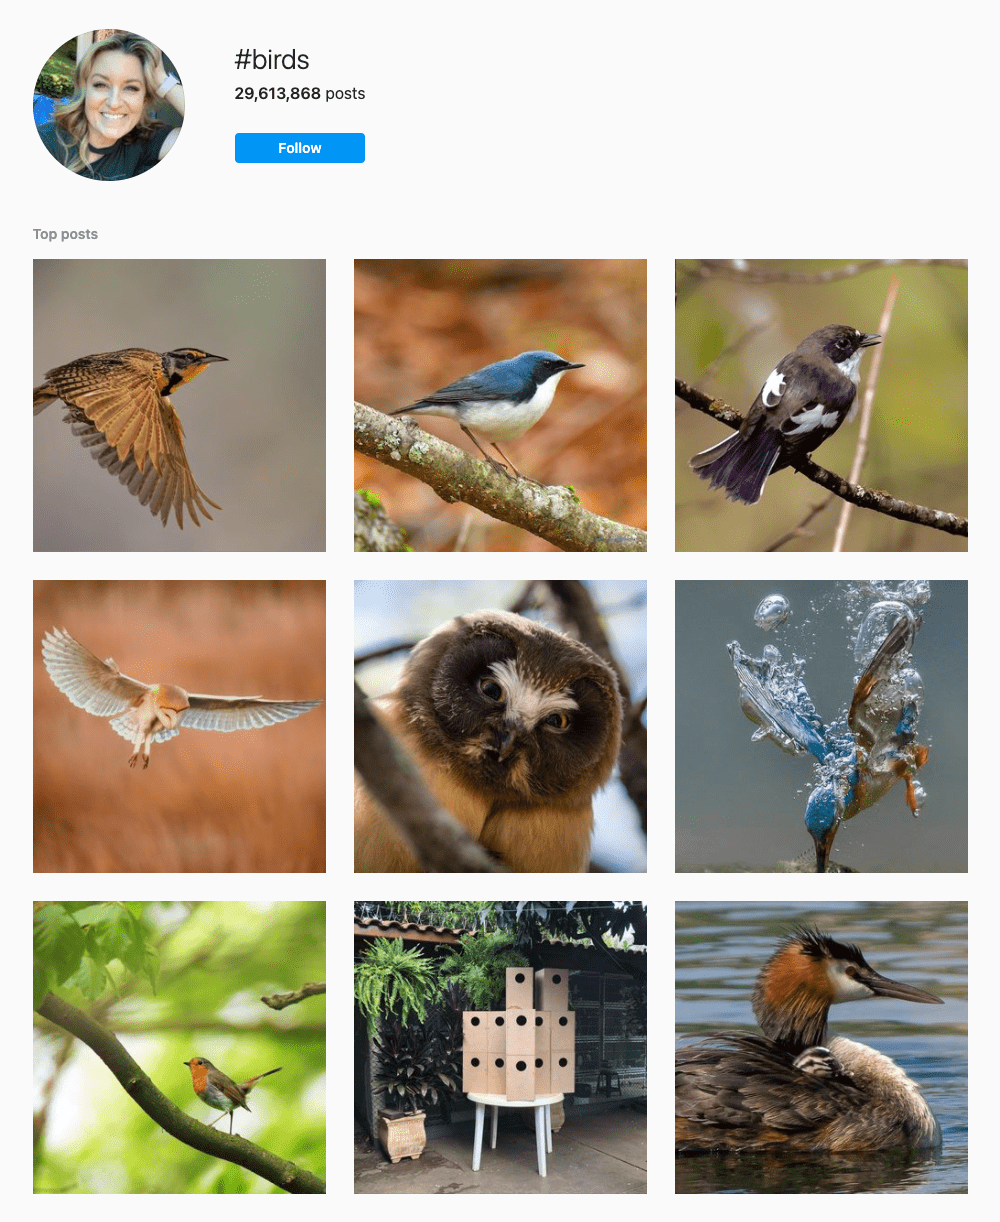 #birds Hashtags for Instagram